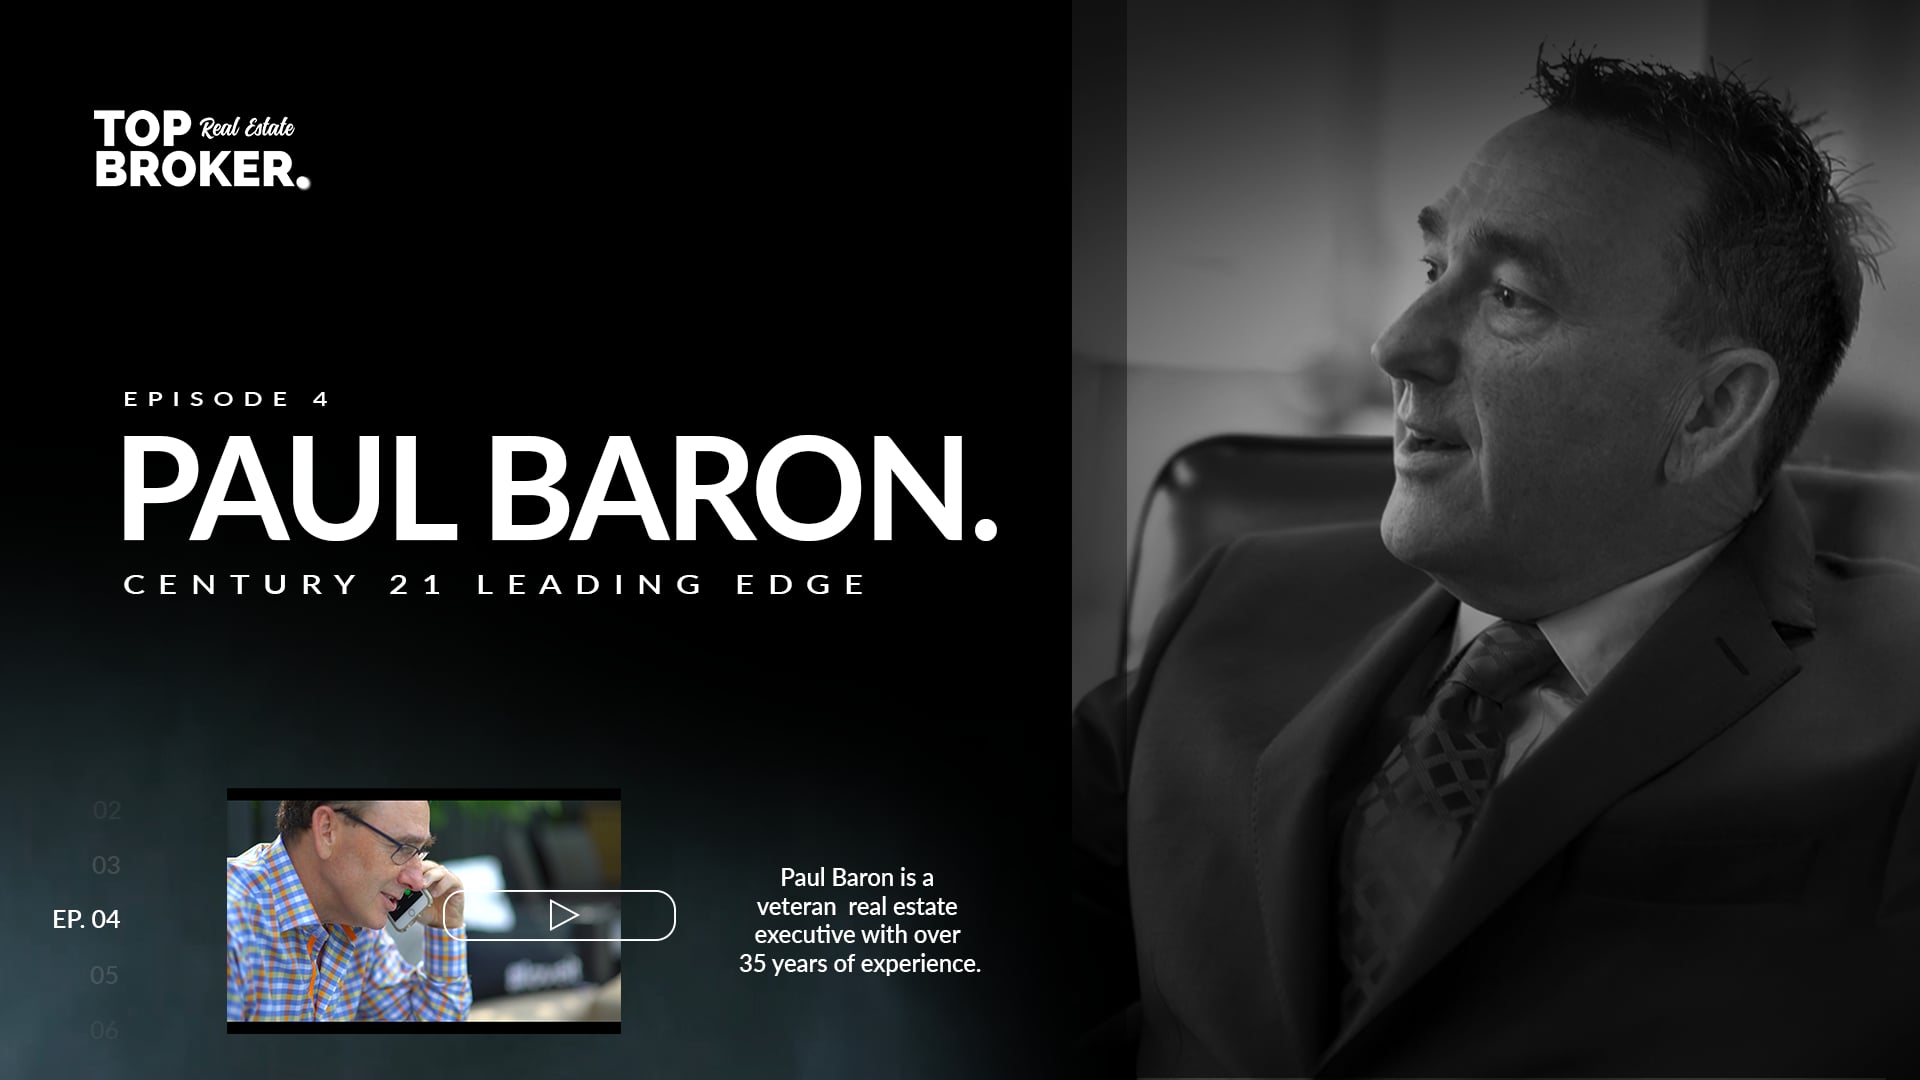 Top Broker, Episode 4 - Paul Baron (Century 21)